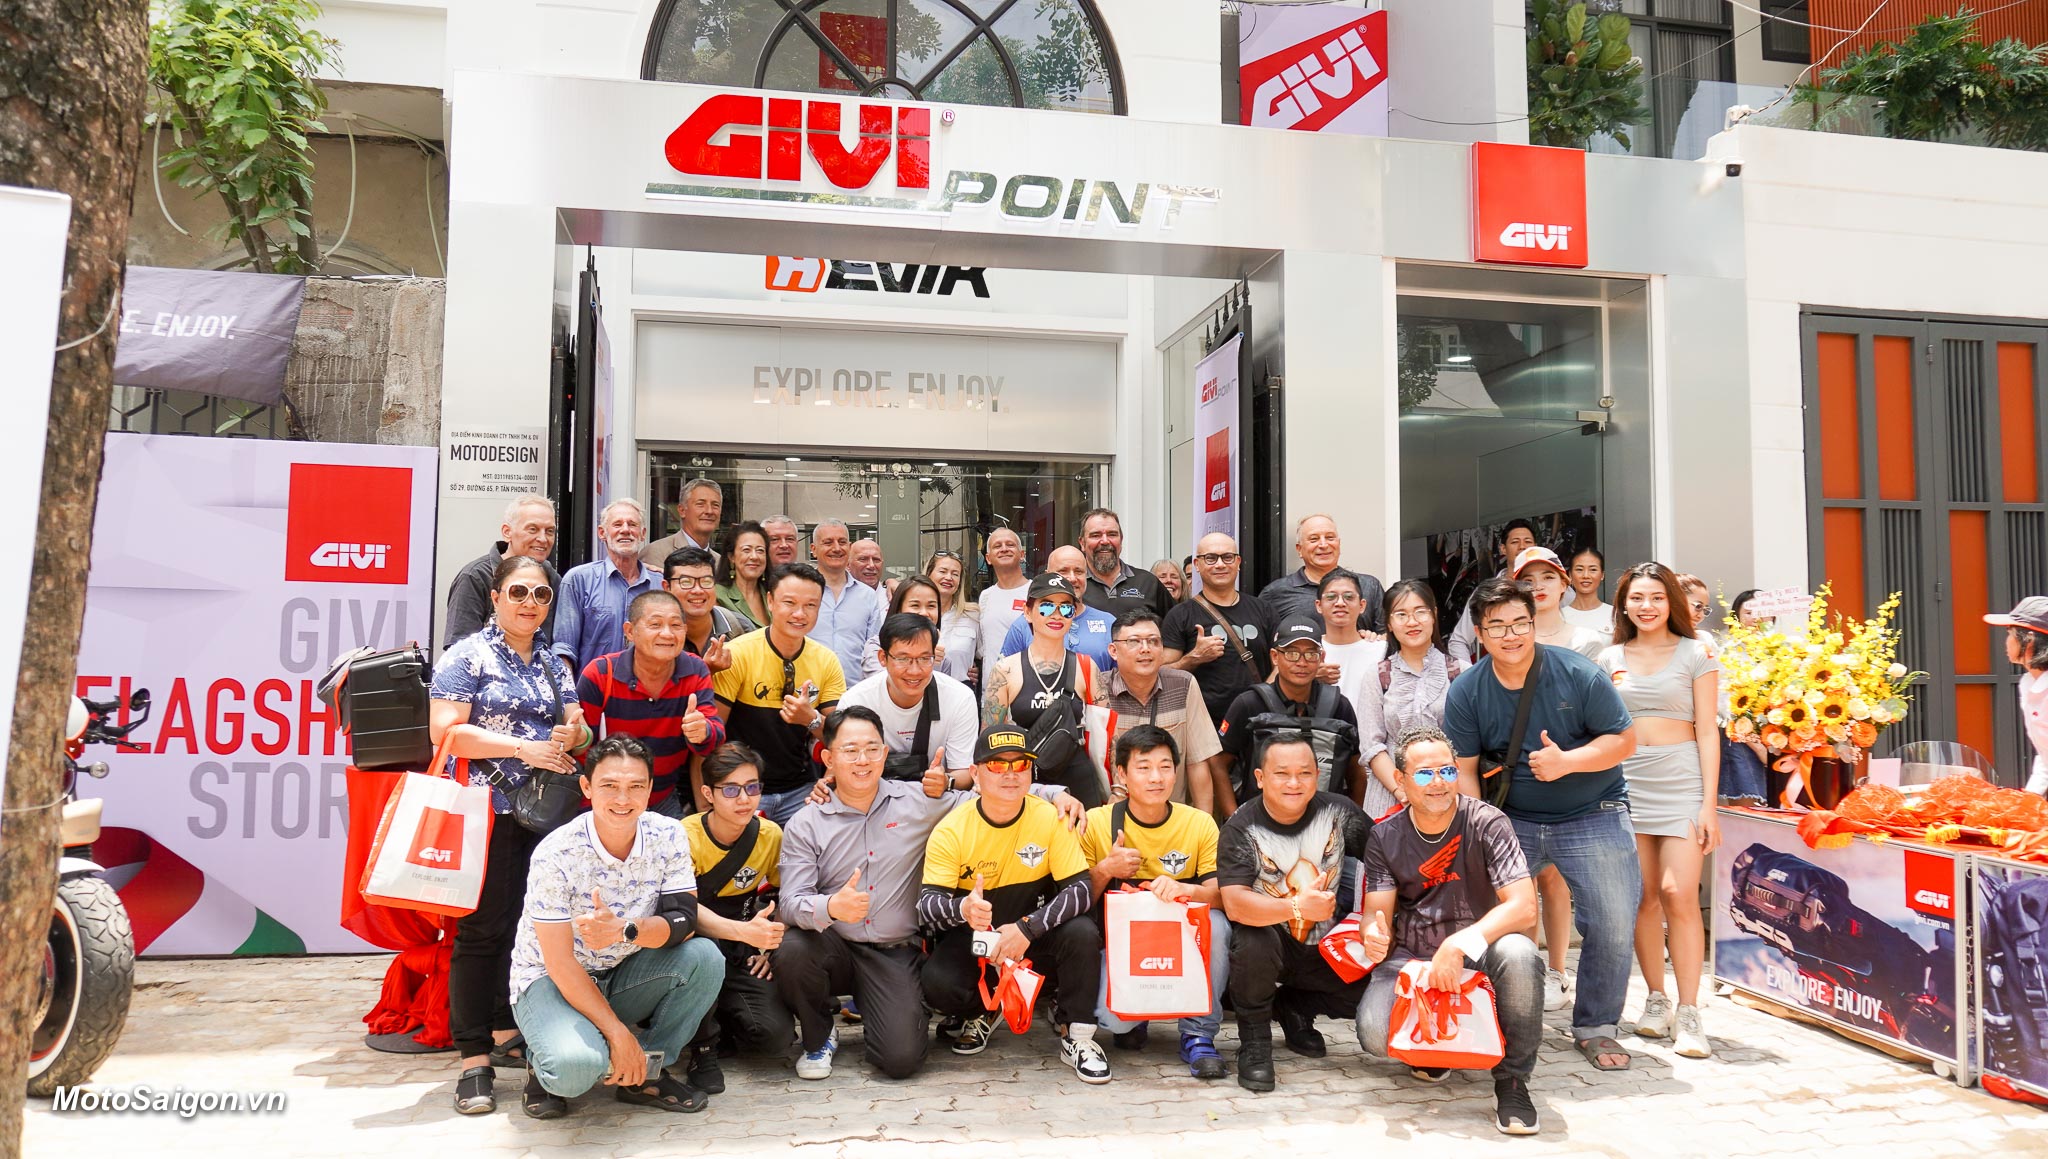 GIVI Việt Nam khai trương cửa hàng Givi Point Quận 7 với quy mô lớn